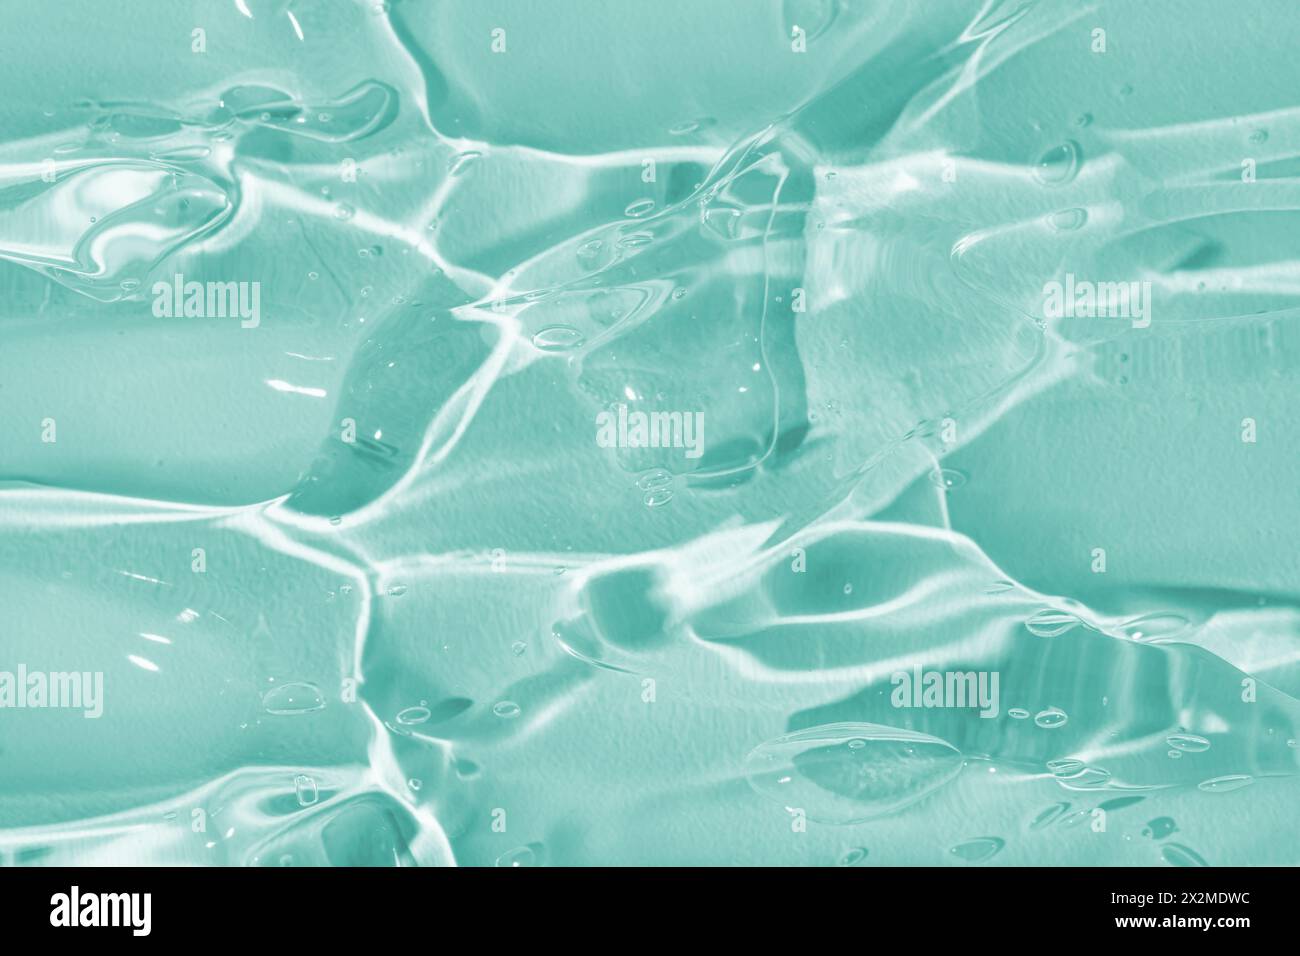 Ein Nahaufnahme-Bild, das die glänzenden, durchscheinenden Qualitäten einer aquatfarbenen Geltextur mit subtilen Lichtreflexionen zeigt Stockfoto